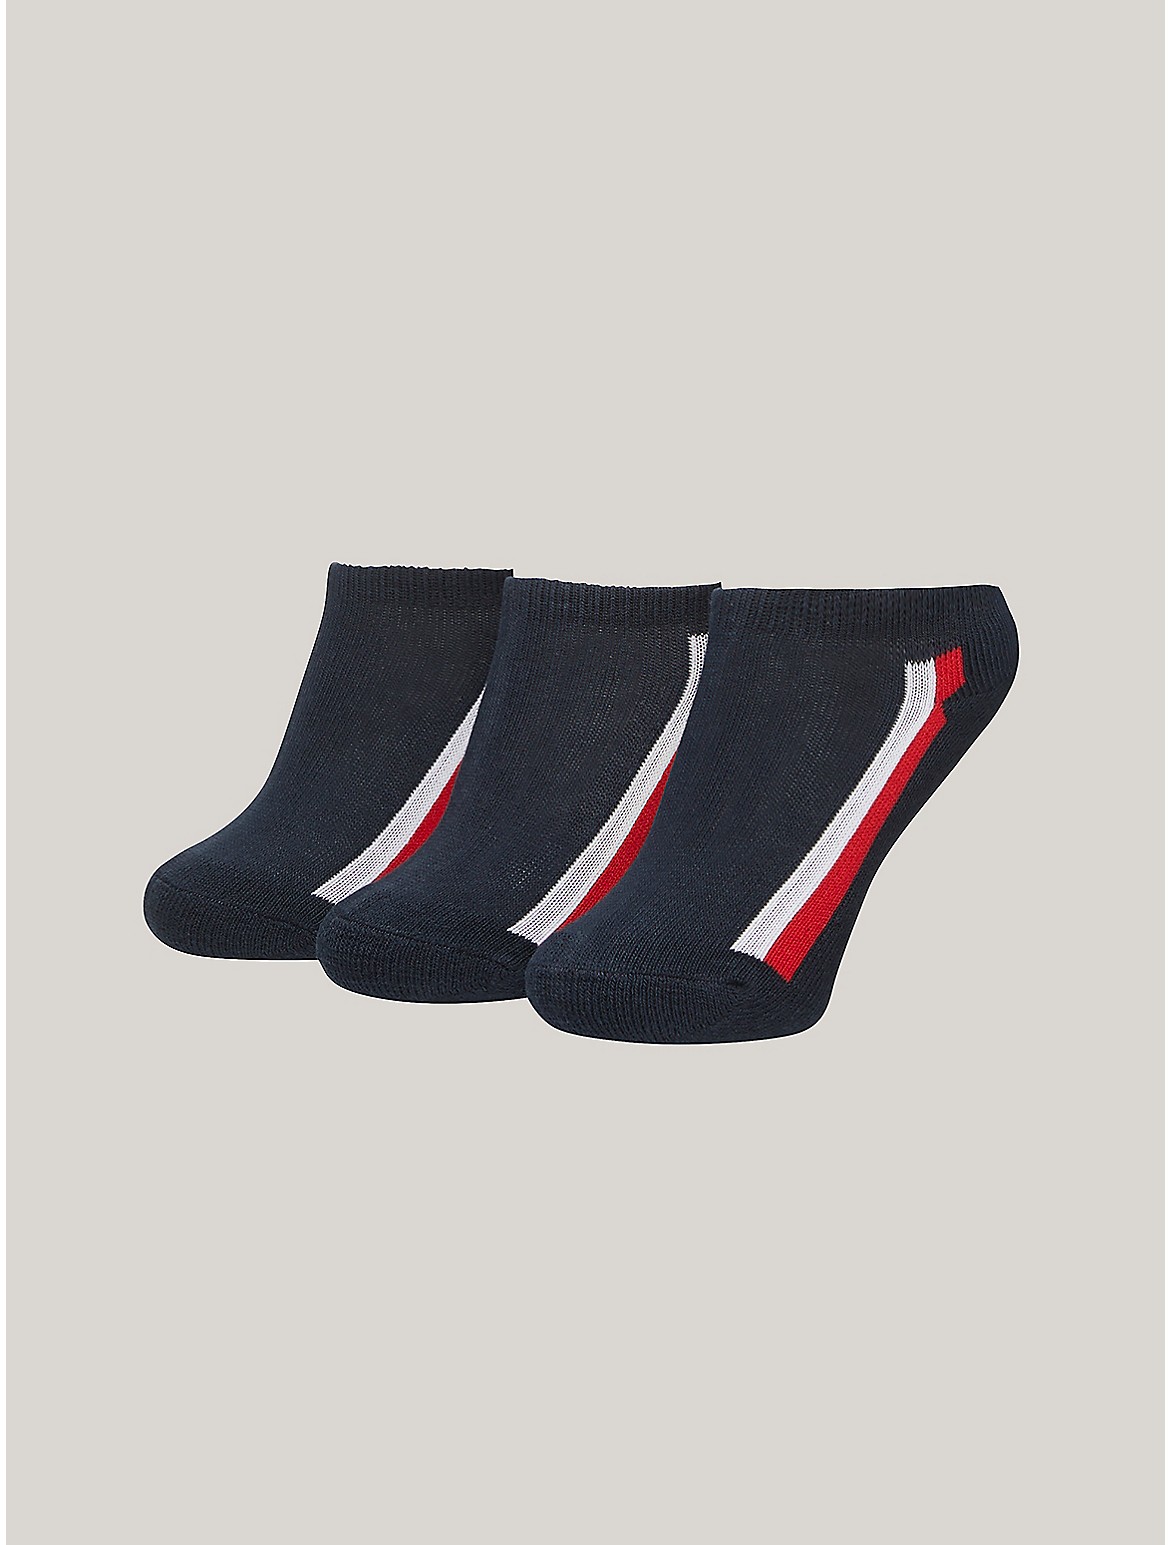 Tommy Hilfiger Boys' Kids' Ankle Sock 3-Pack - Blue - S